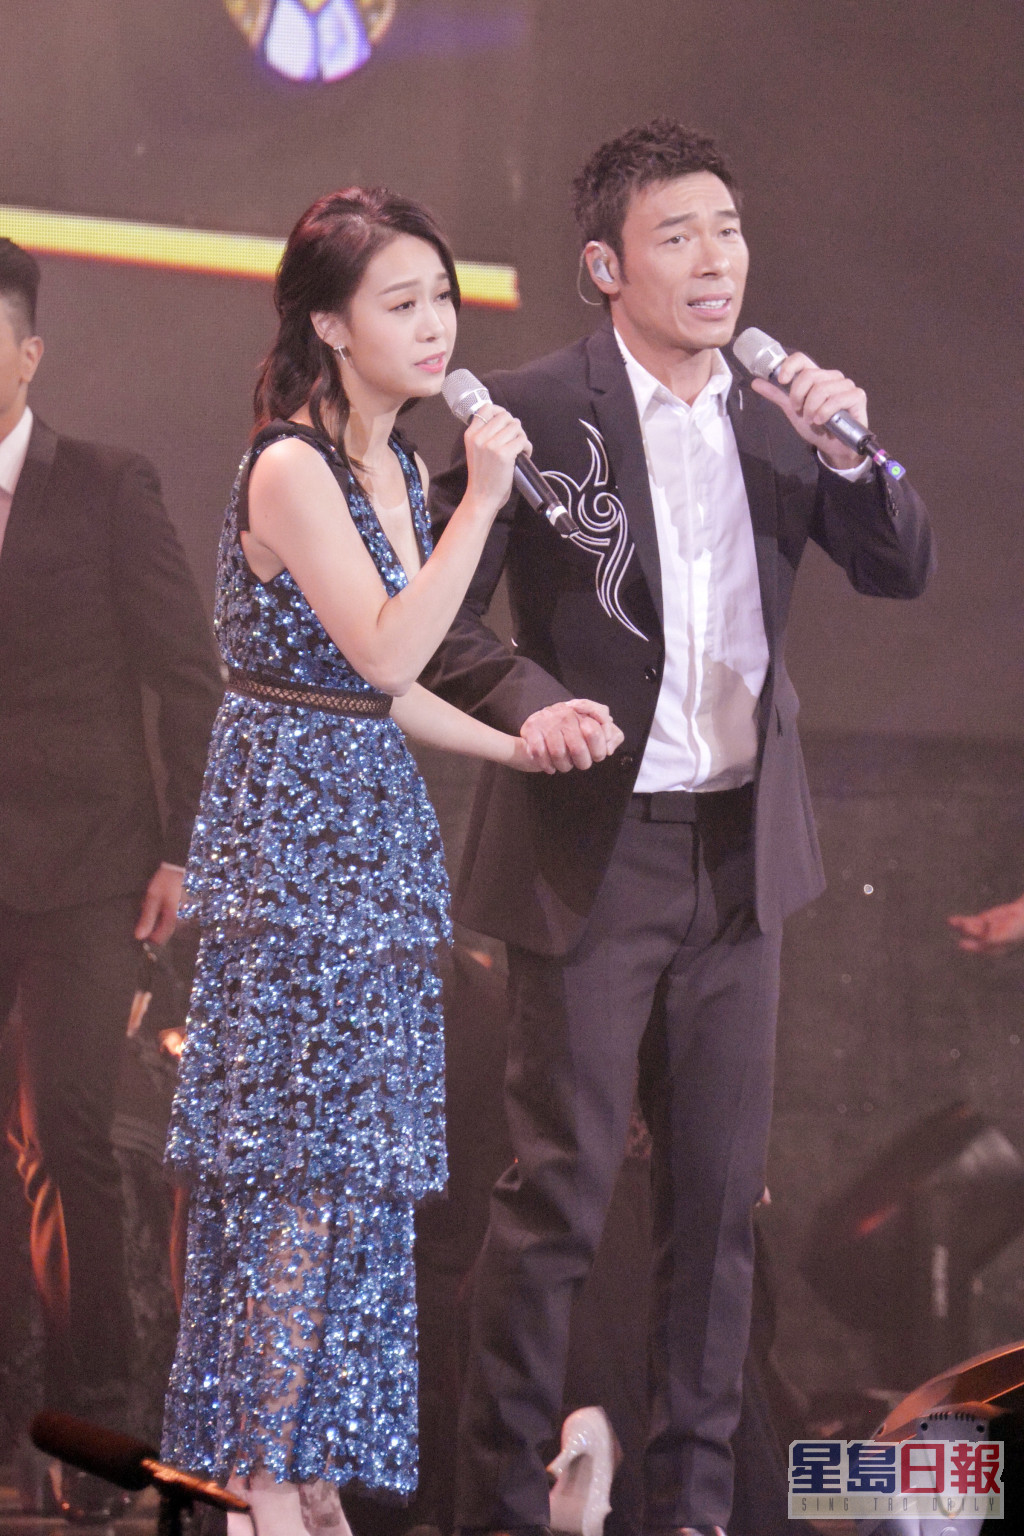 許志安與黃心穎於2018年曾在《星光熠熠耀保良》中合唱《會過去的》。